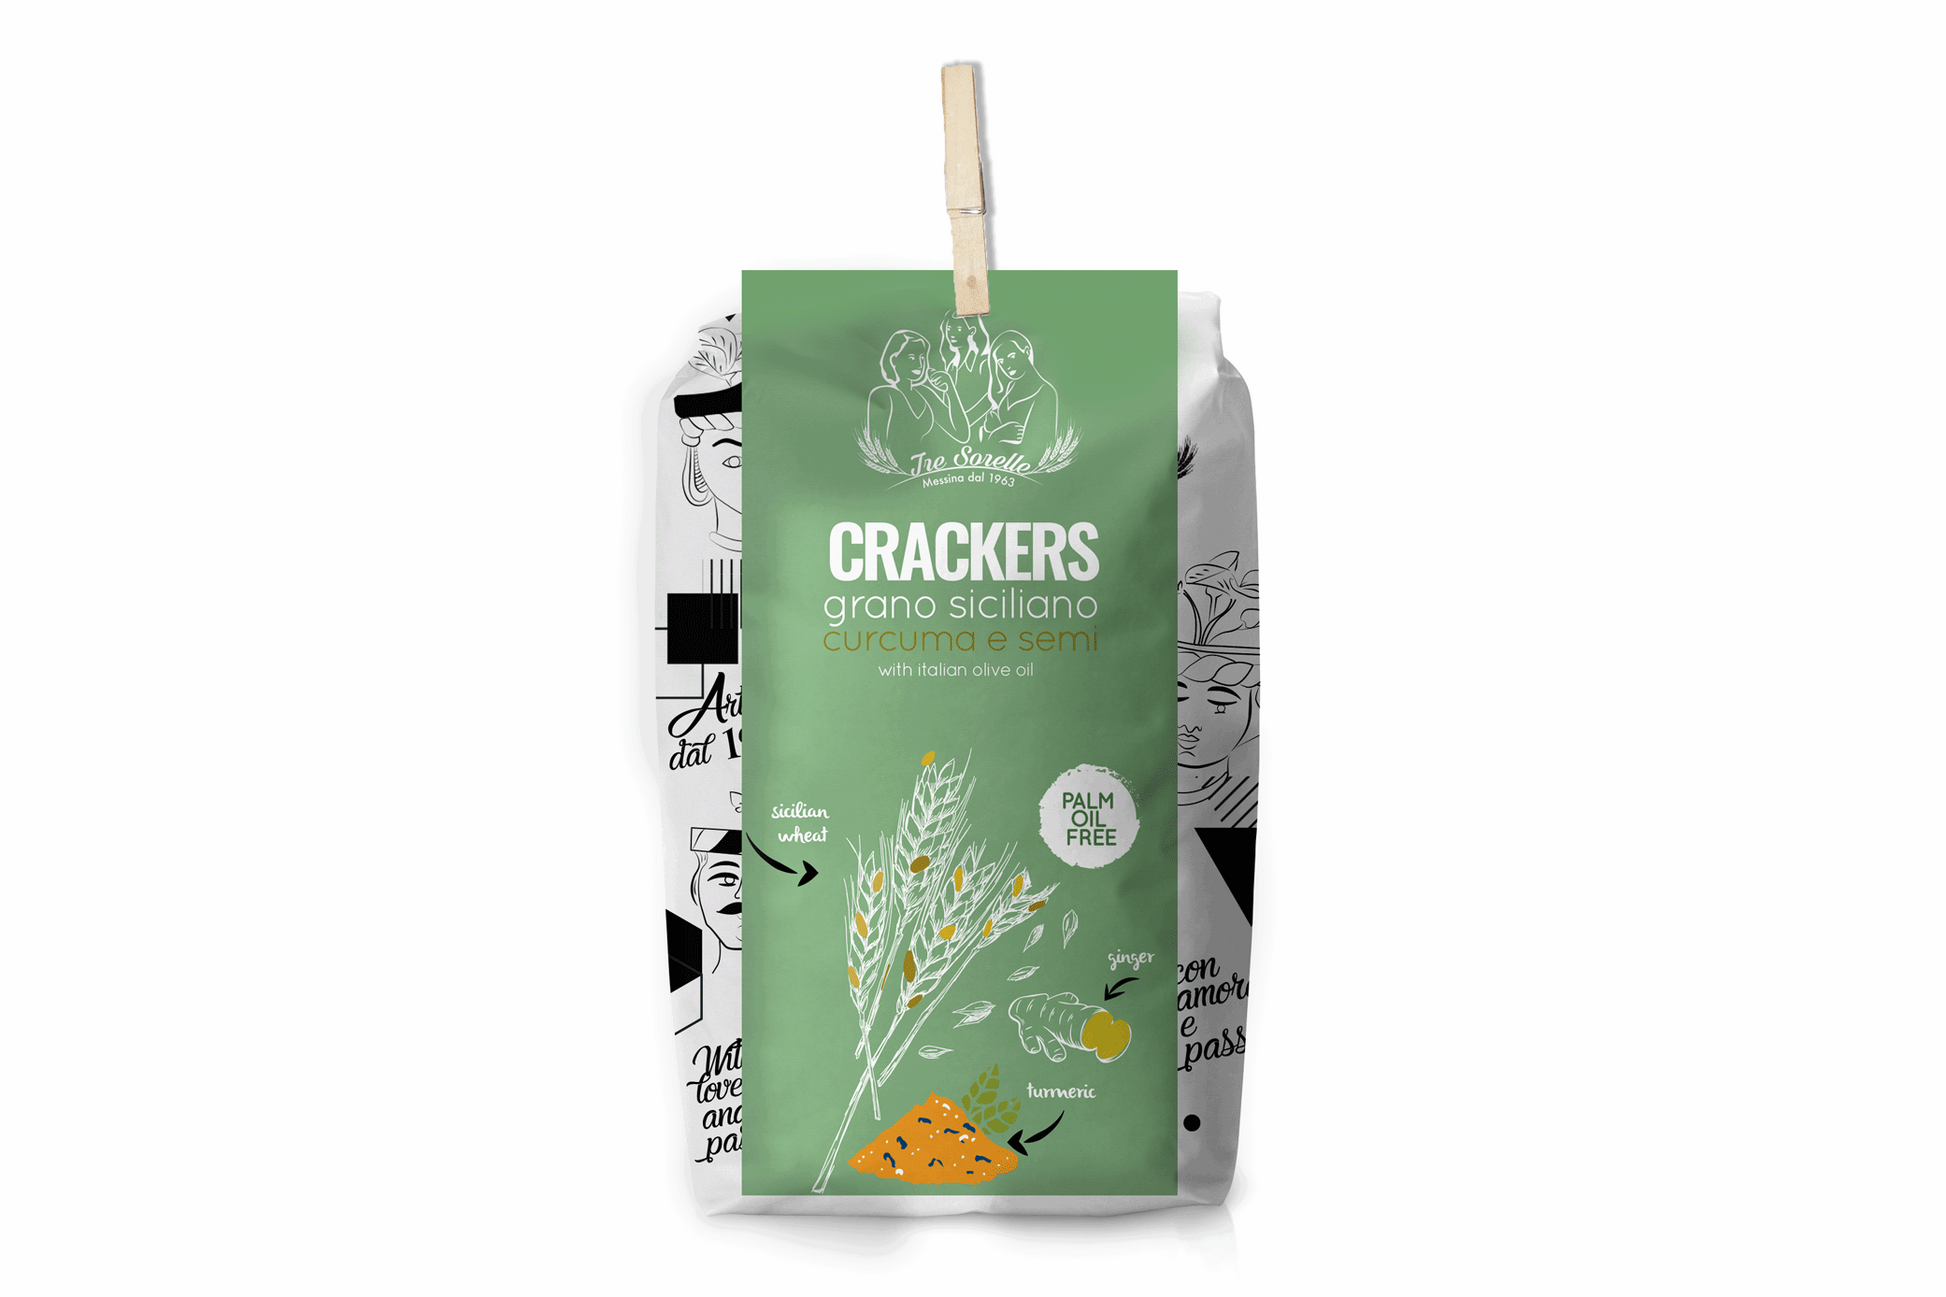 Cracker Semi di Chia - I migliori prodotti Made in Italy da Fiera Monza e Brianza SHOP - Solo 7€! Acquista subito su Fiera di Monza Shop!